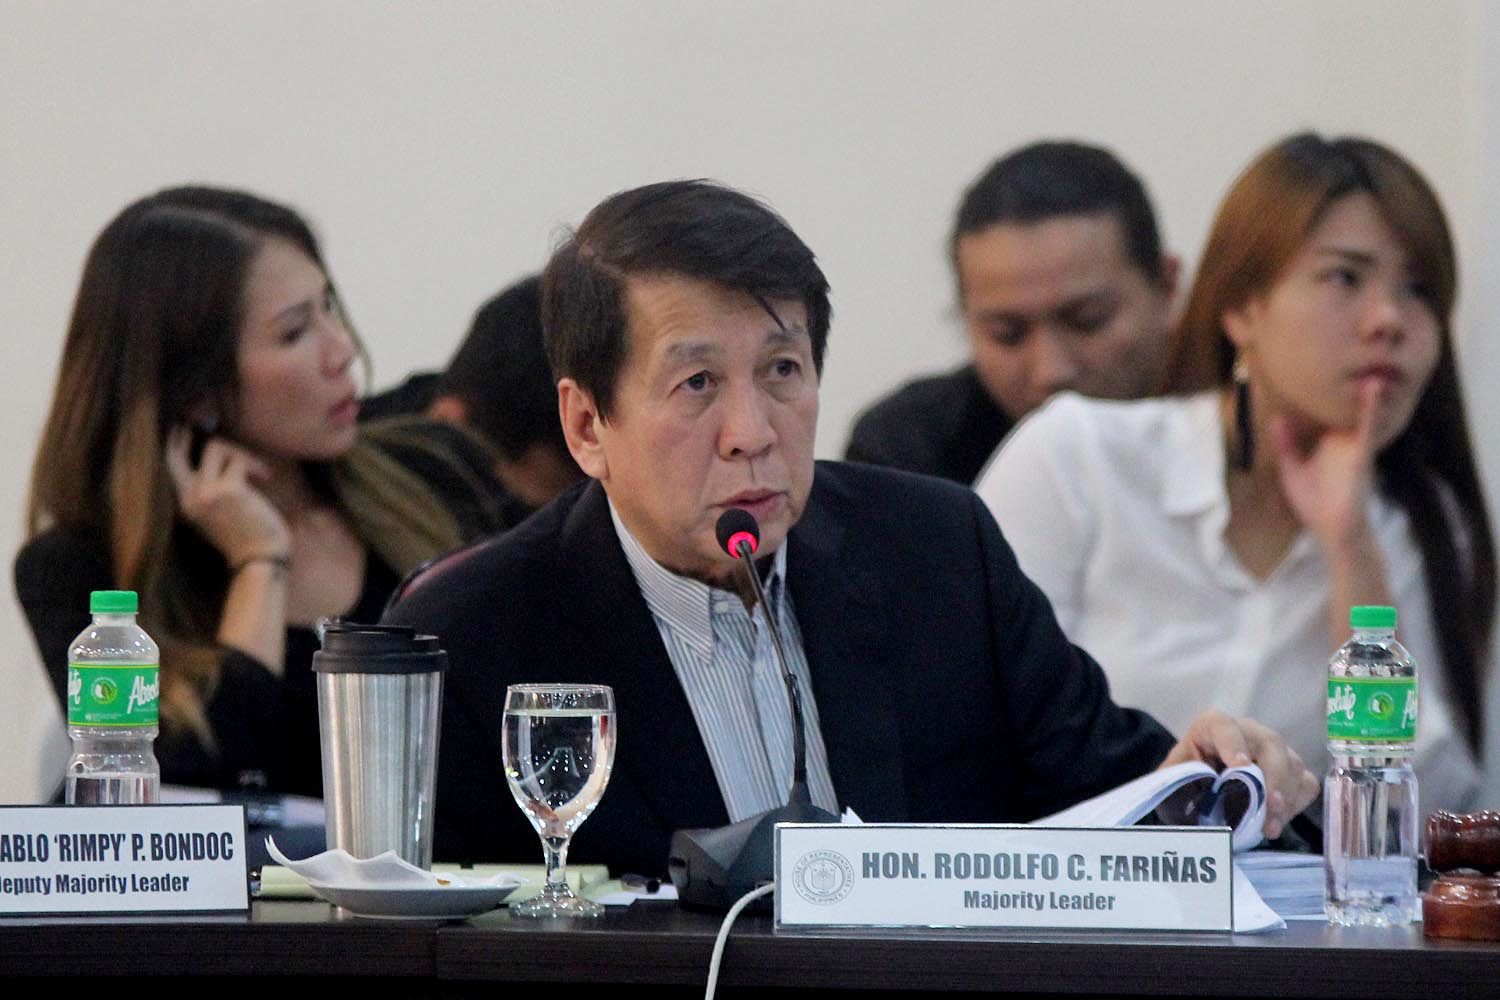 Imee Marcos, pejabat Ilocos Norte meminta maaf kepada Fariñas atas resolusi tersebut